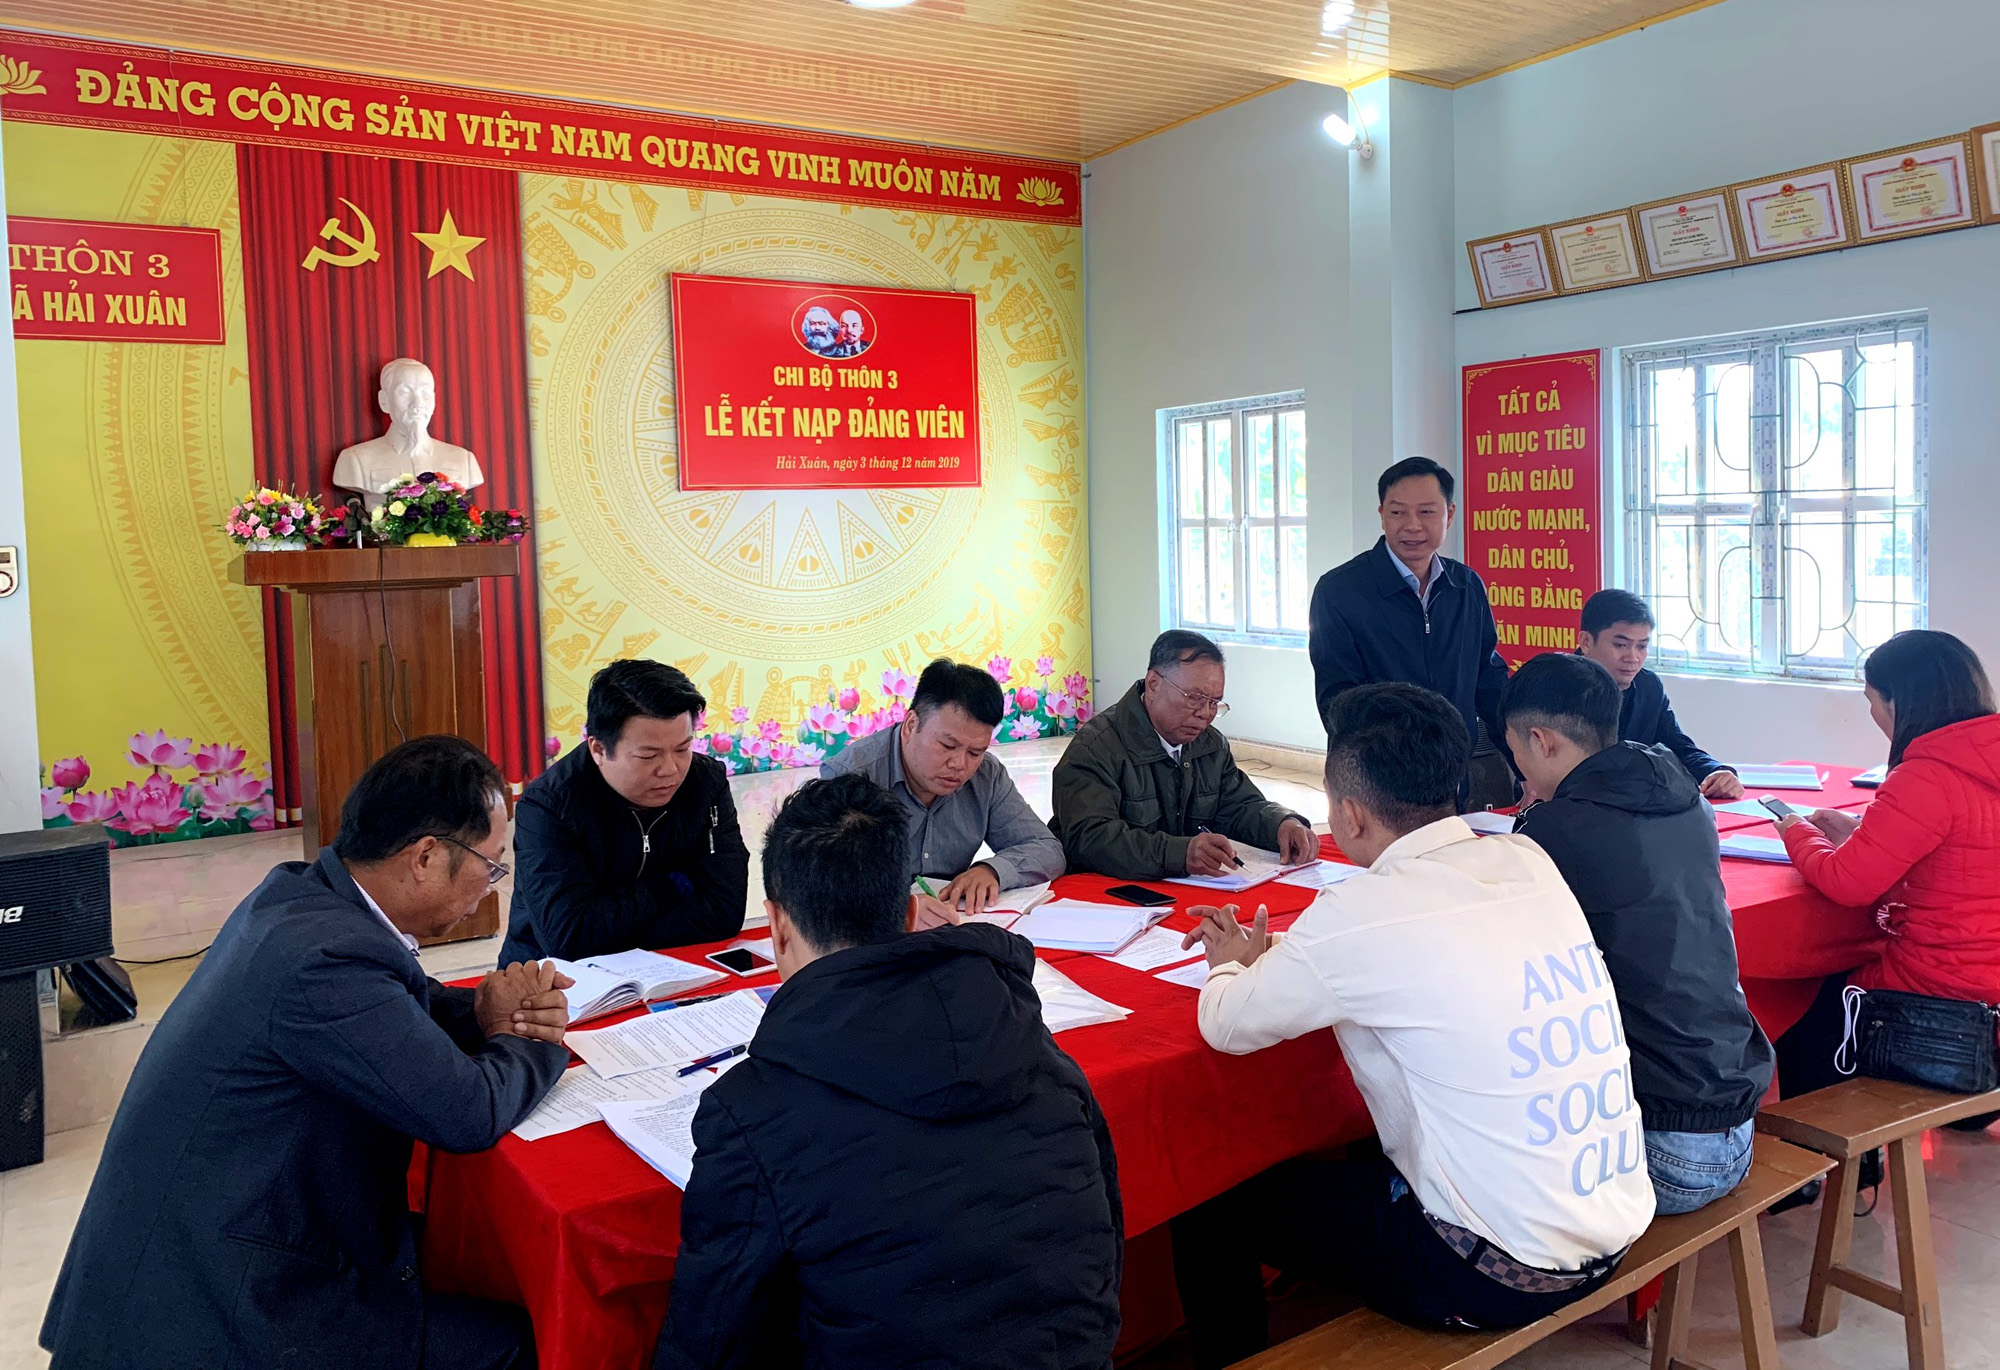 Đồng chí Lê Văn Ánh, Tỉnh ủy viên, Bí thư Thành ủy phát biểu tại buổi sinh hoạt Chi bộ thôn 3, xã Hải Xuân